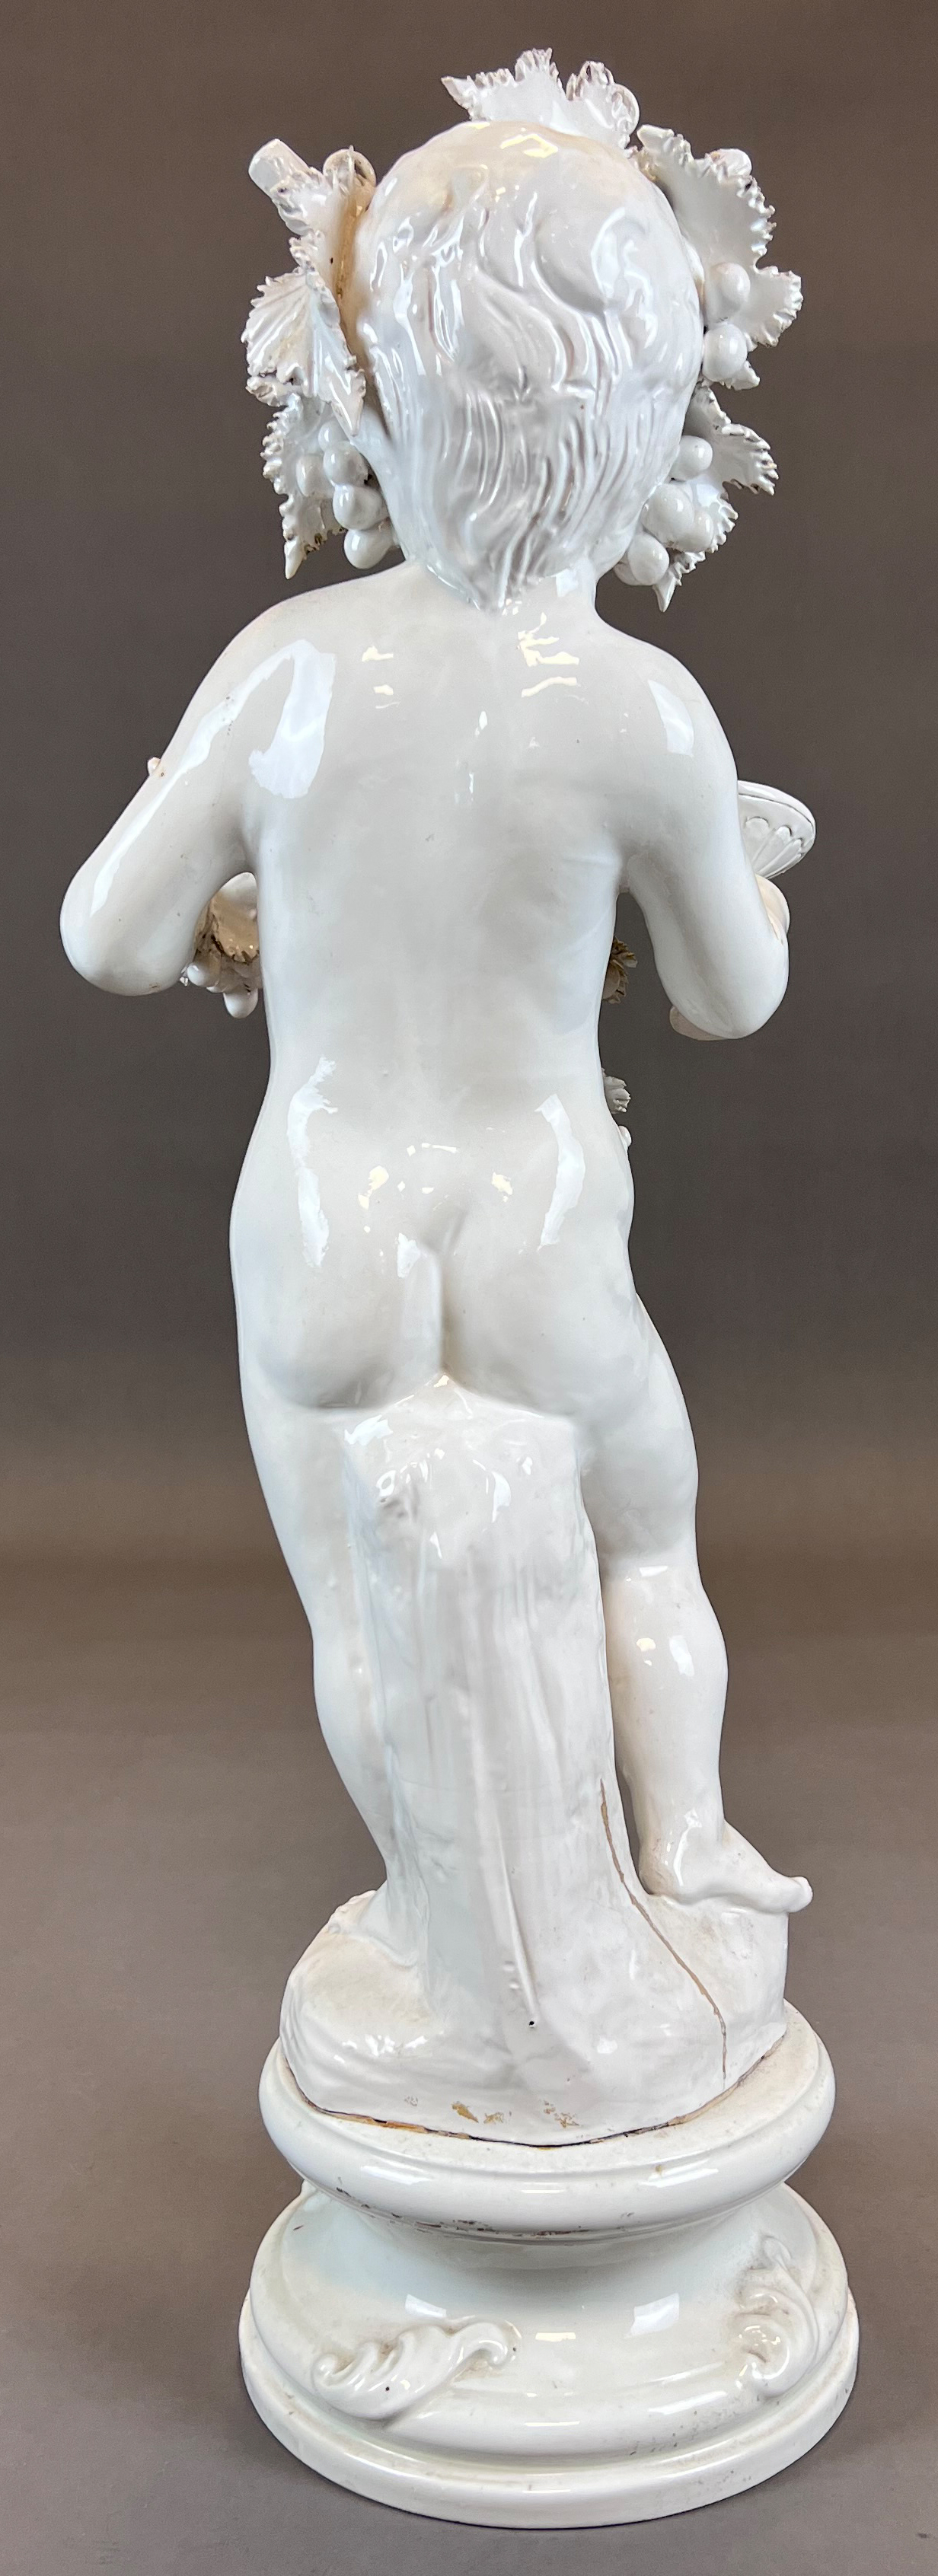 Große Figur des Bacchus. Wohl Capodimonte. 20. Jahrhundert. - Bild 3 aus 16